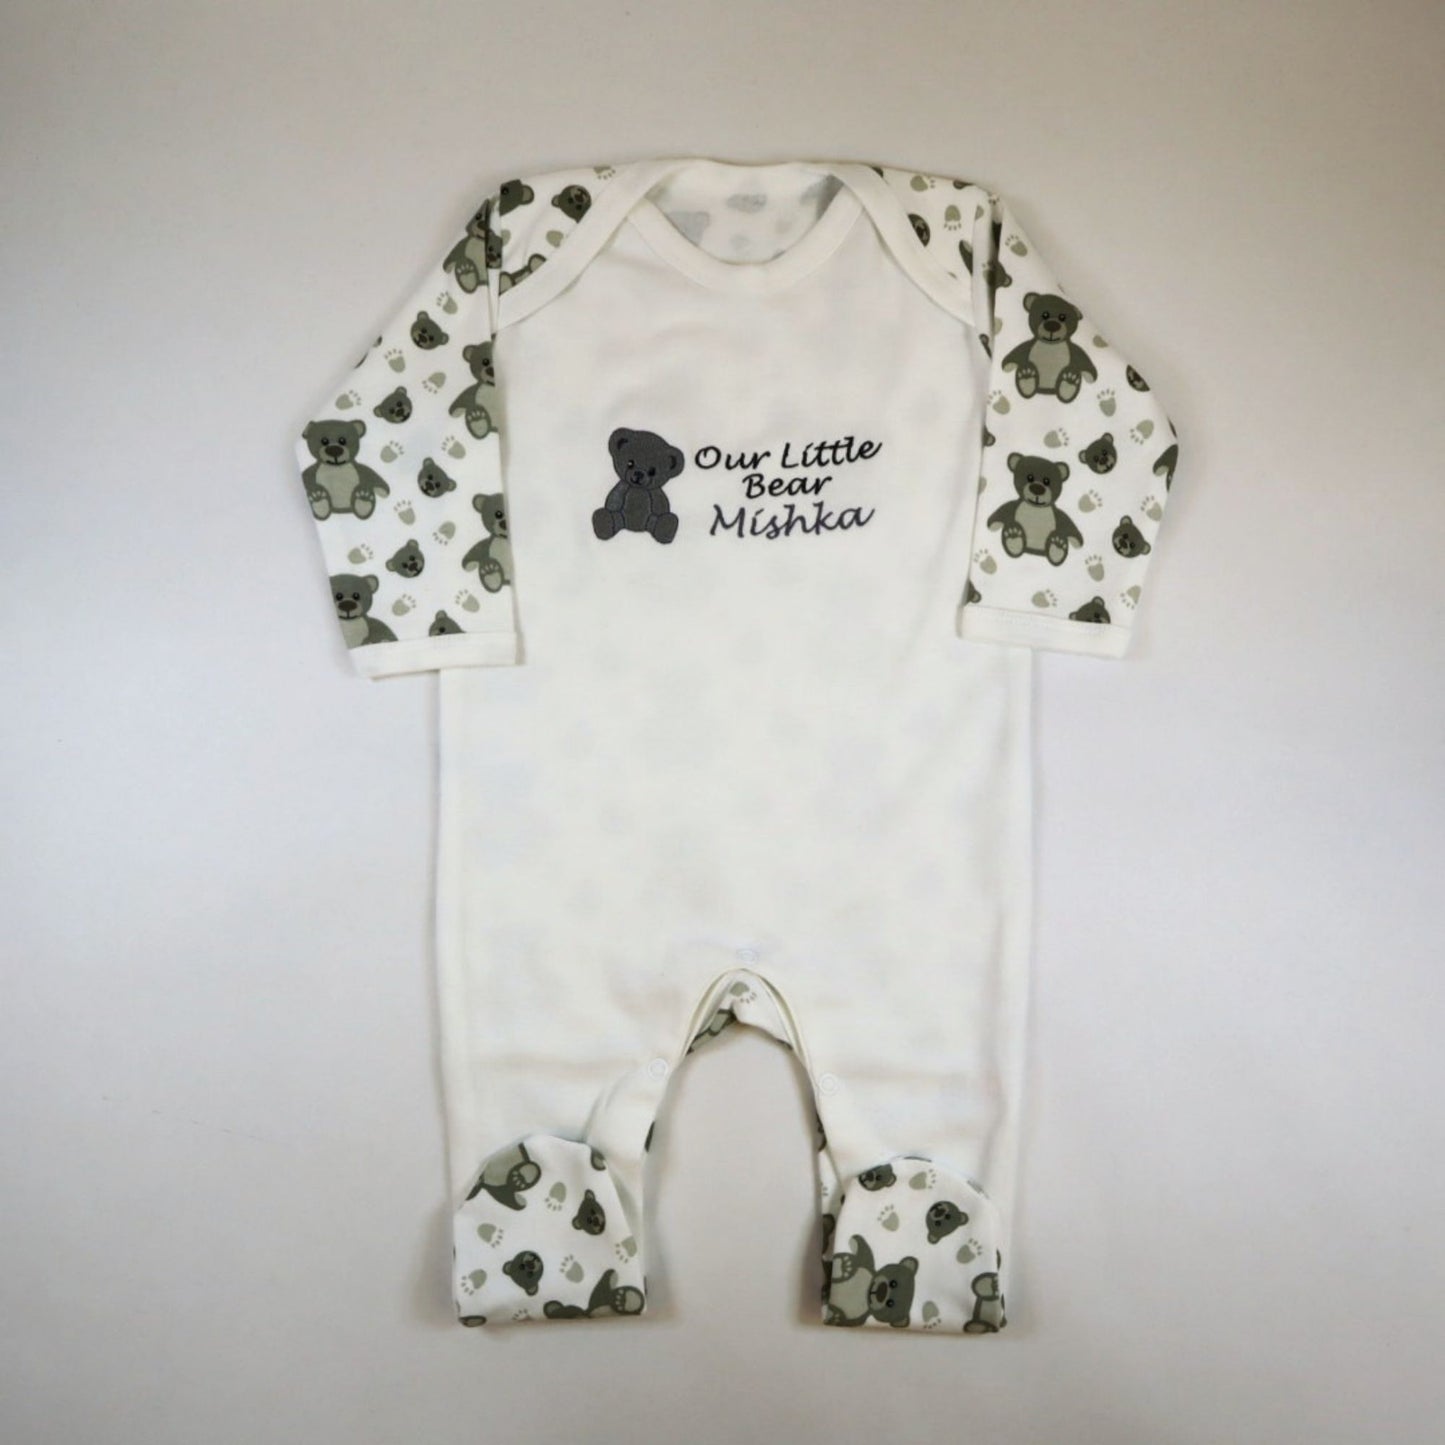 Our Little Bear Medium Baby Gift Hamper – White/Grey